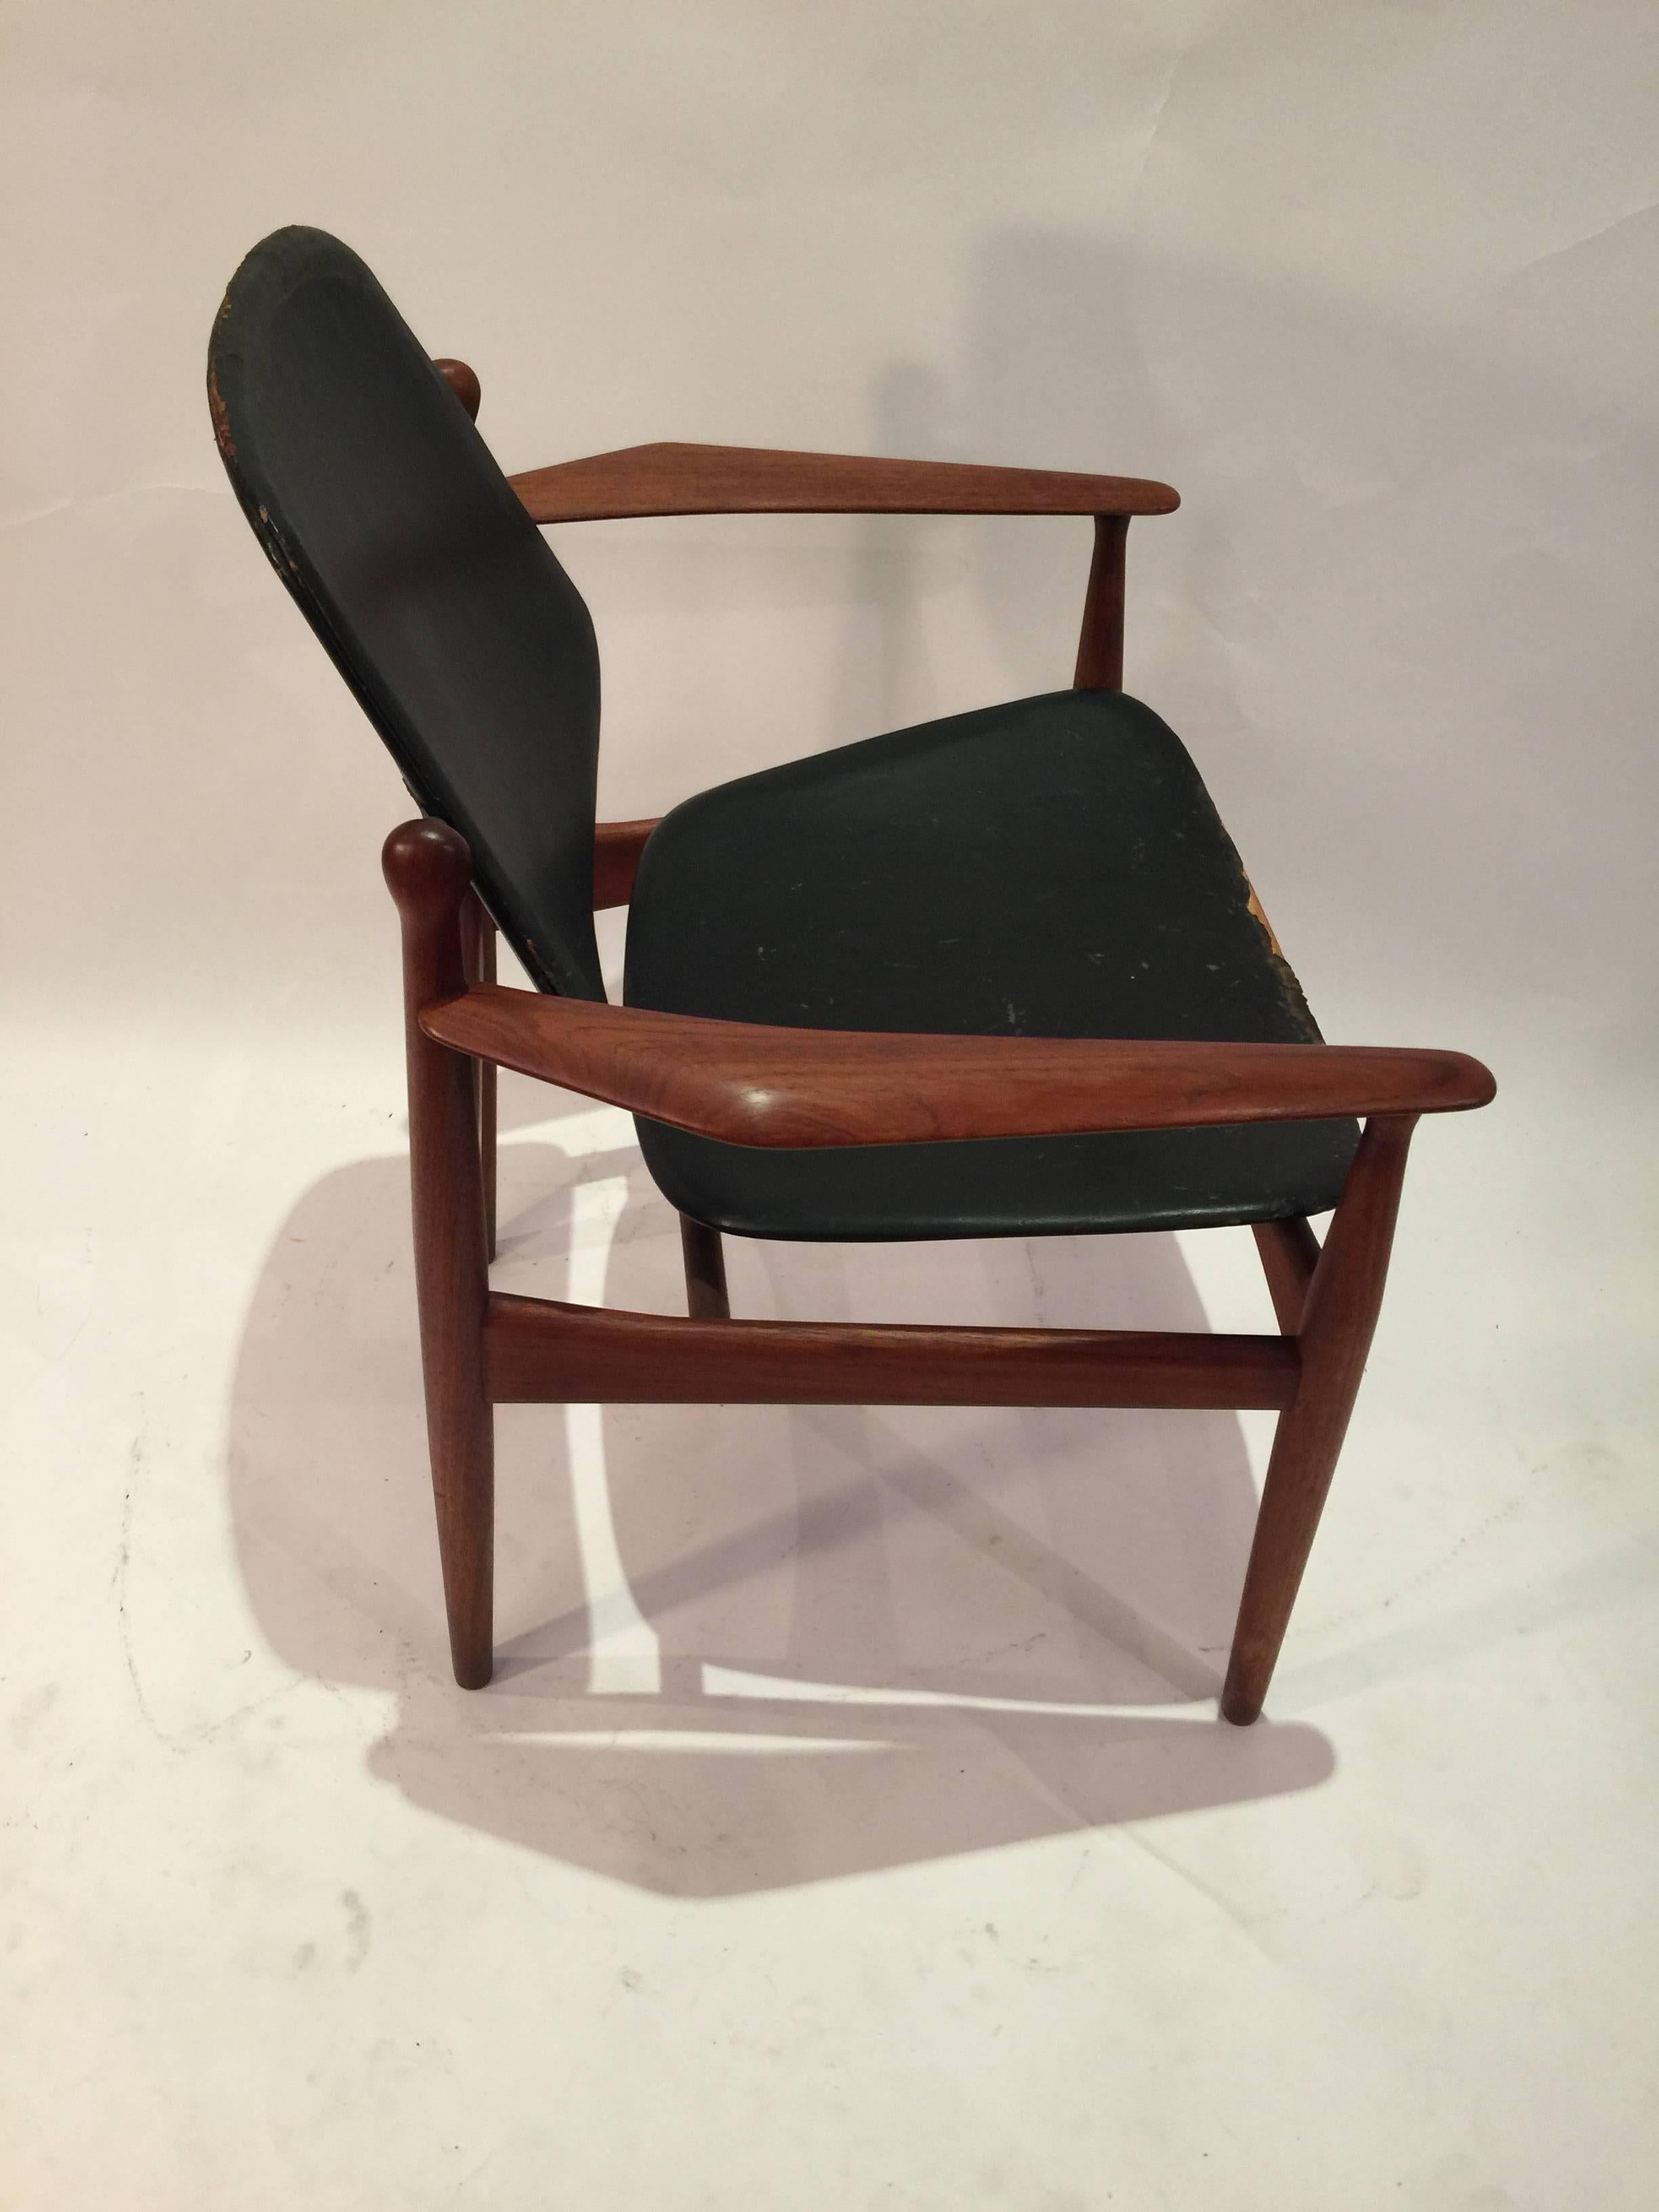 vodder chair